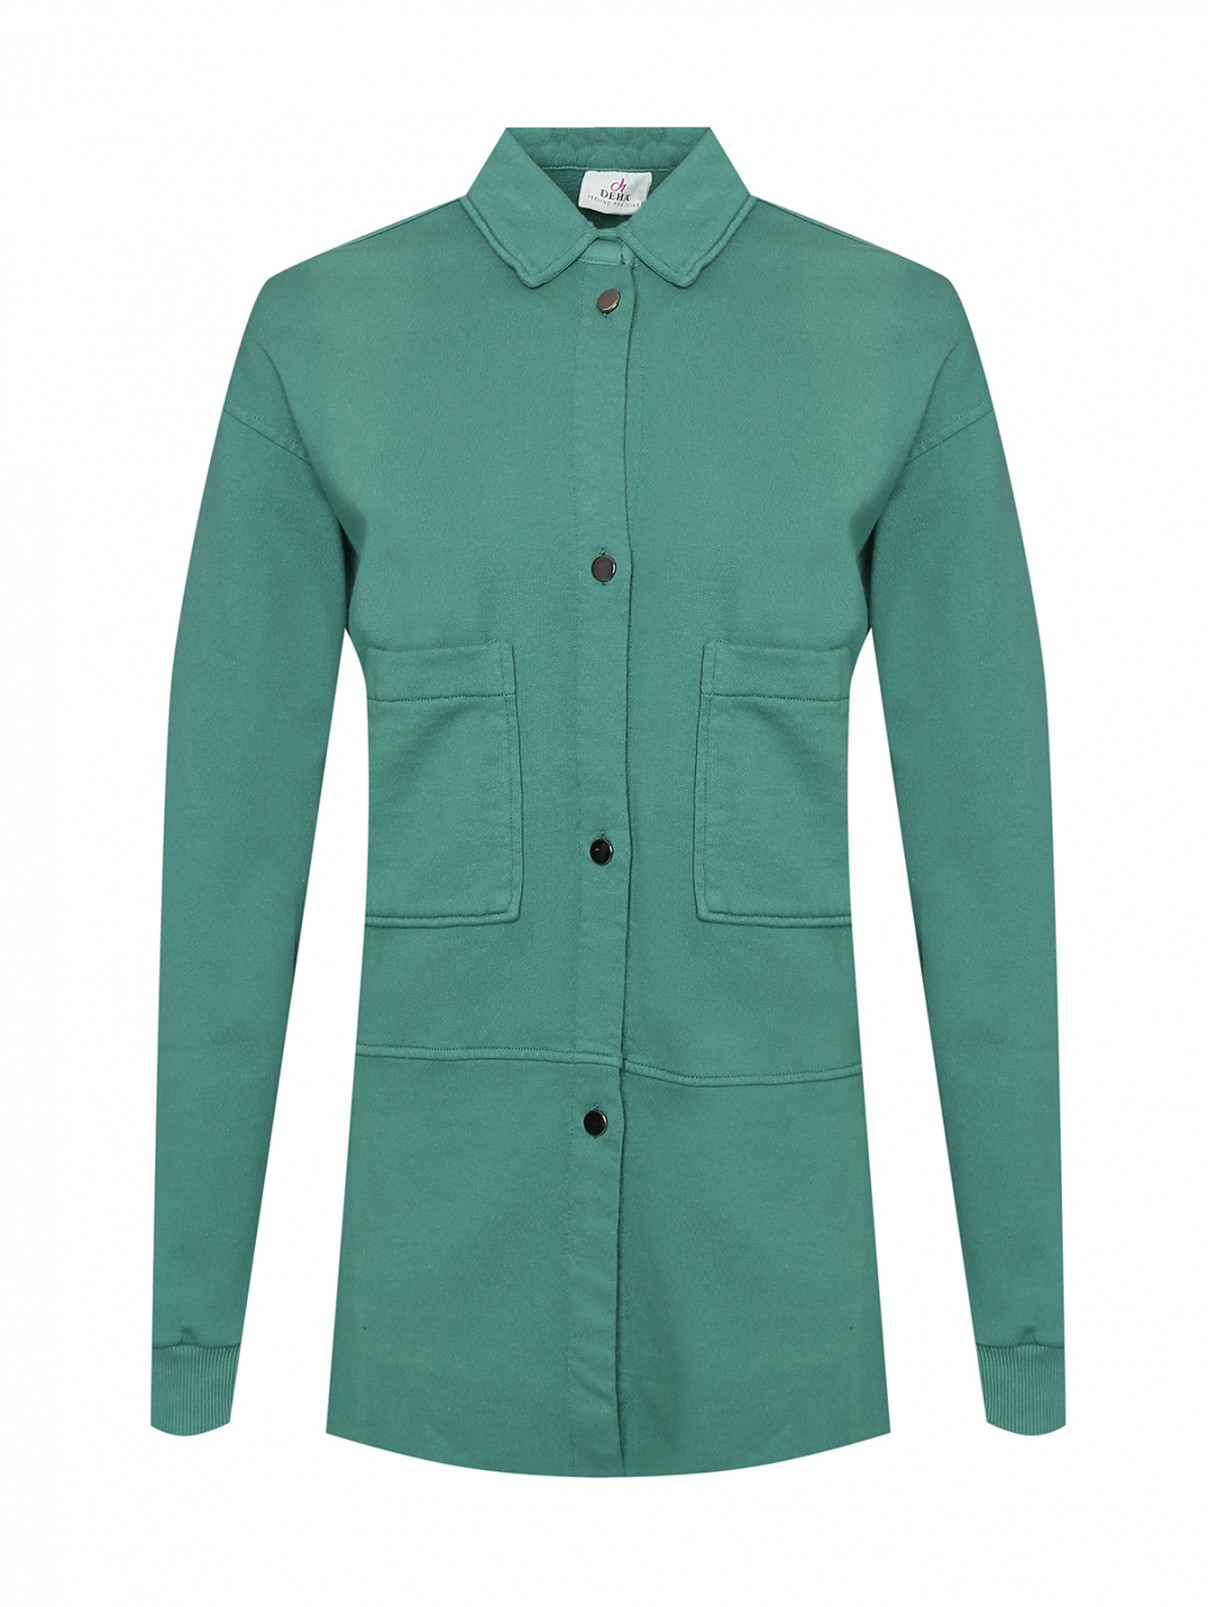 Трикотажная рубашка с карманами DEHA  –  Общий вид  – Цвет:  Зеленый